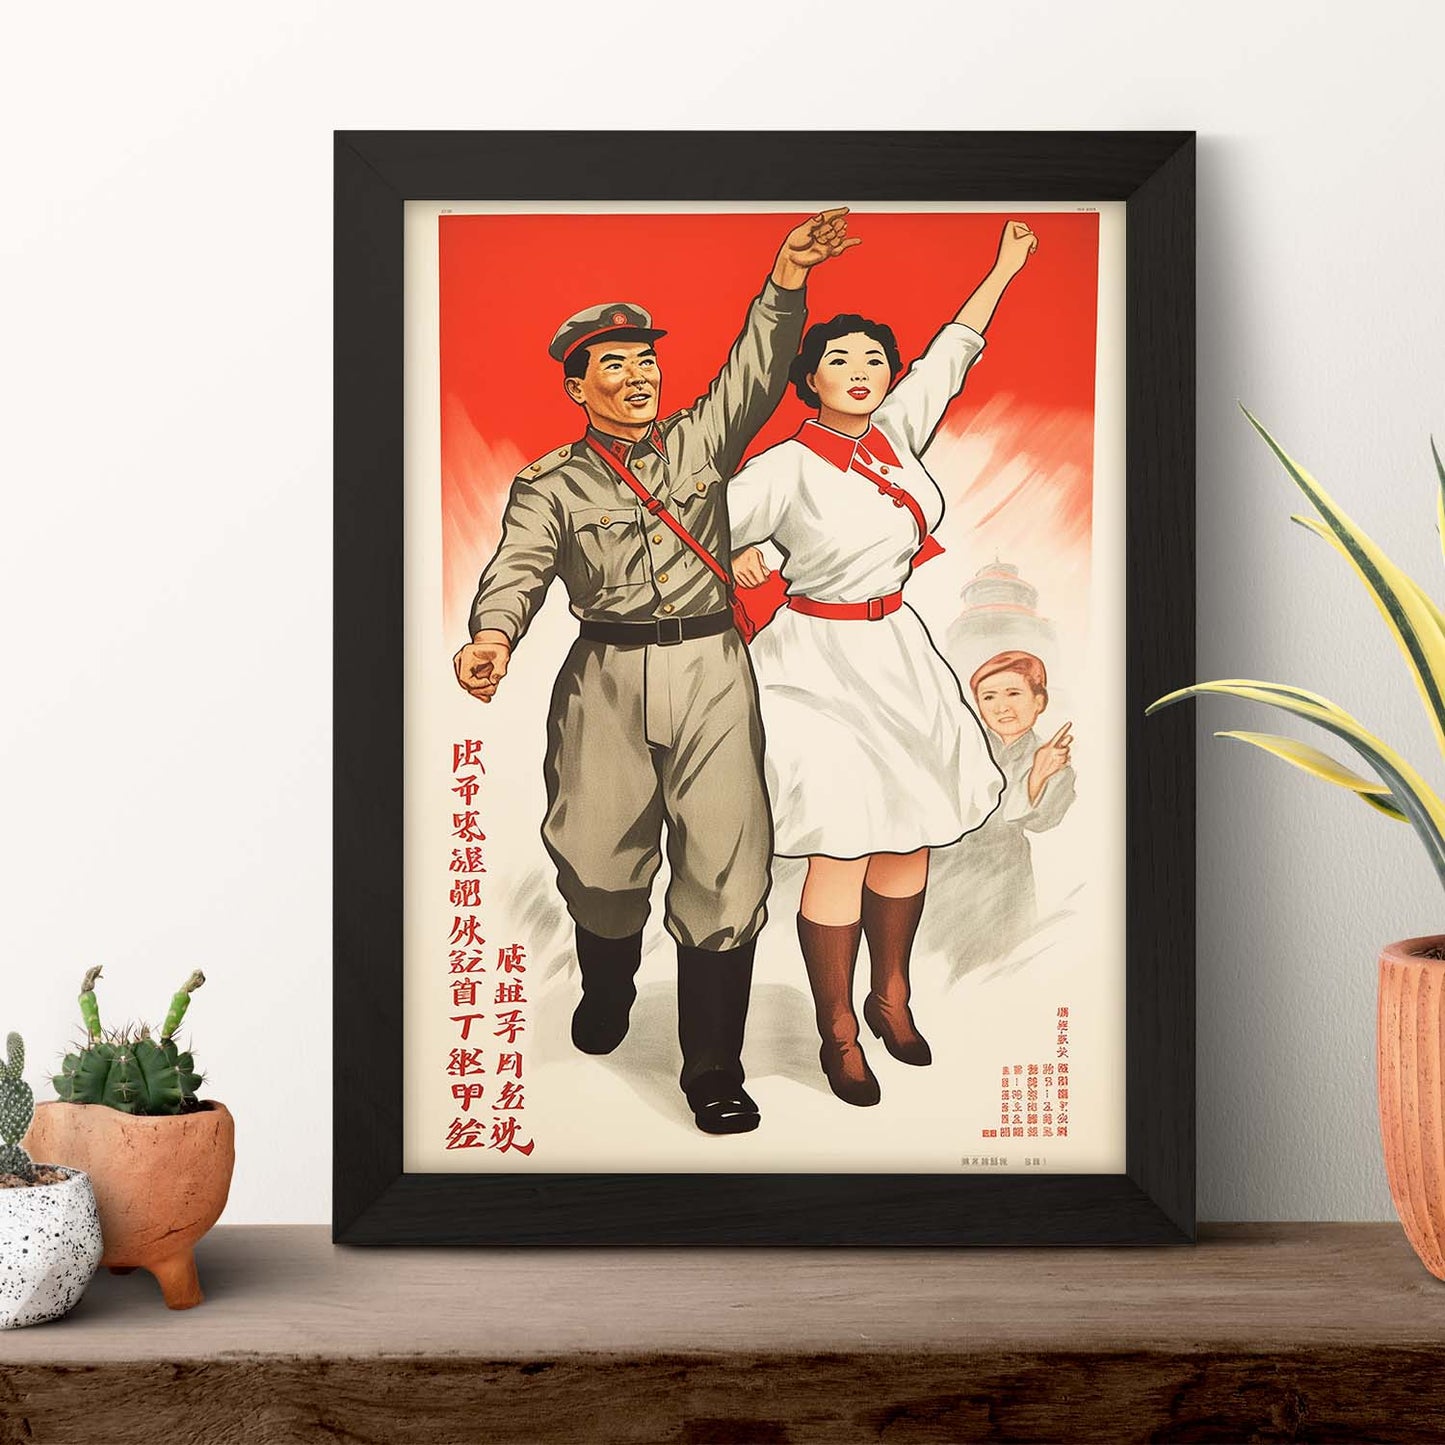 Lámina de Reclutamiento Partido Comunista Chino Años 50